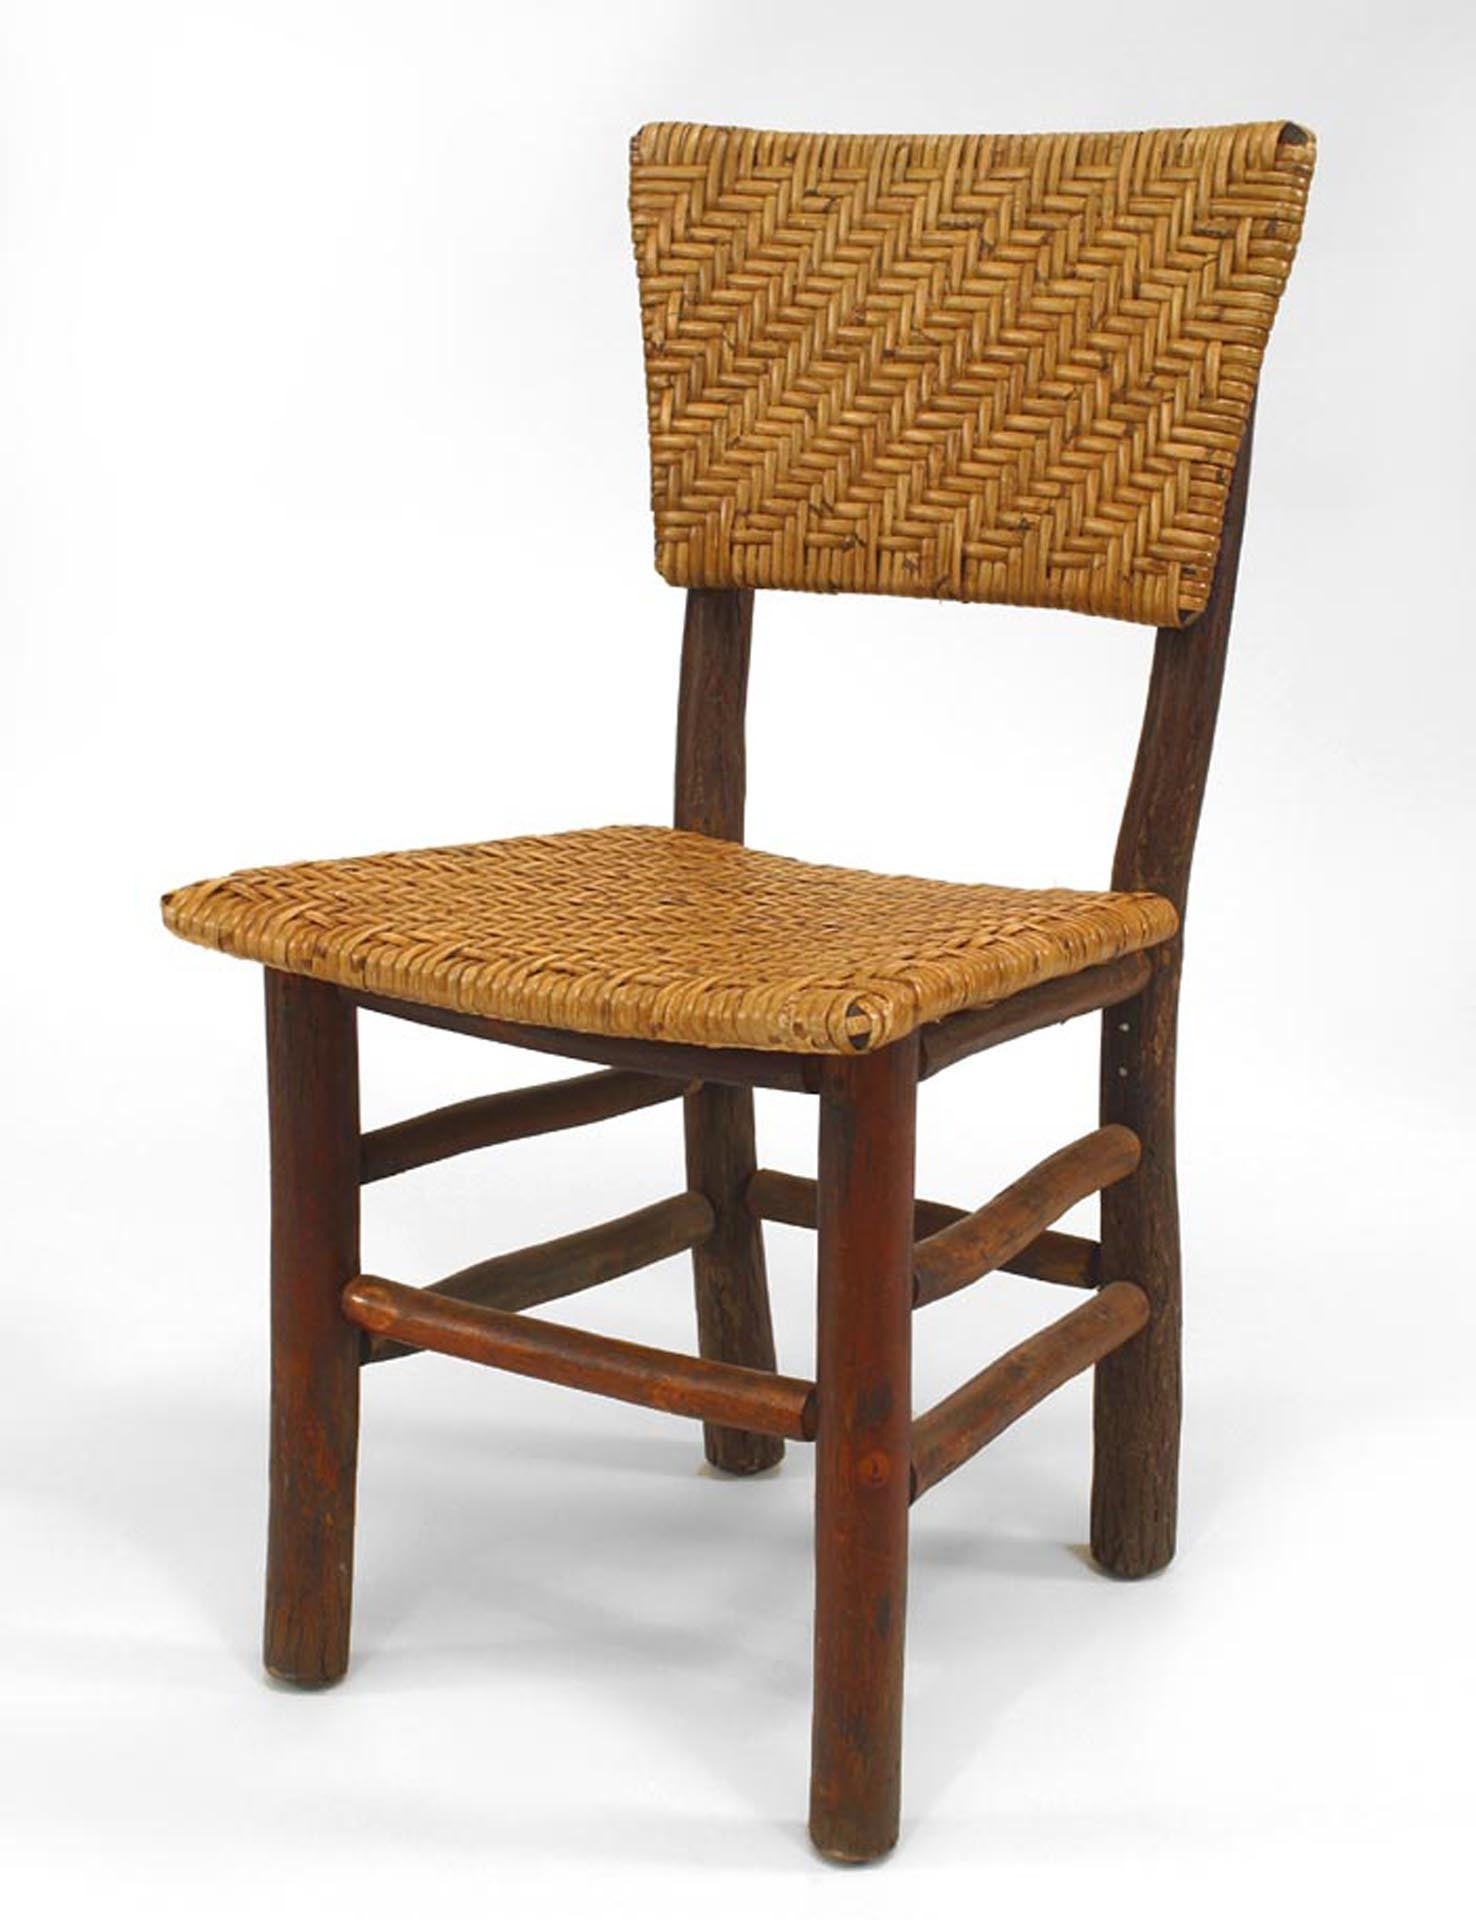 Satz von 6 rustikalen Beistellstühlen aus altem Hickoryholz (um 1940) mit Sitzfläche und Rückenlehne aus geflochtenem Rattan mit geblähter Rückenlehne und Bahre (Marke Martinsville, Ind.) (Russel Wright-Design)
